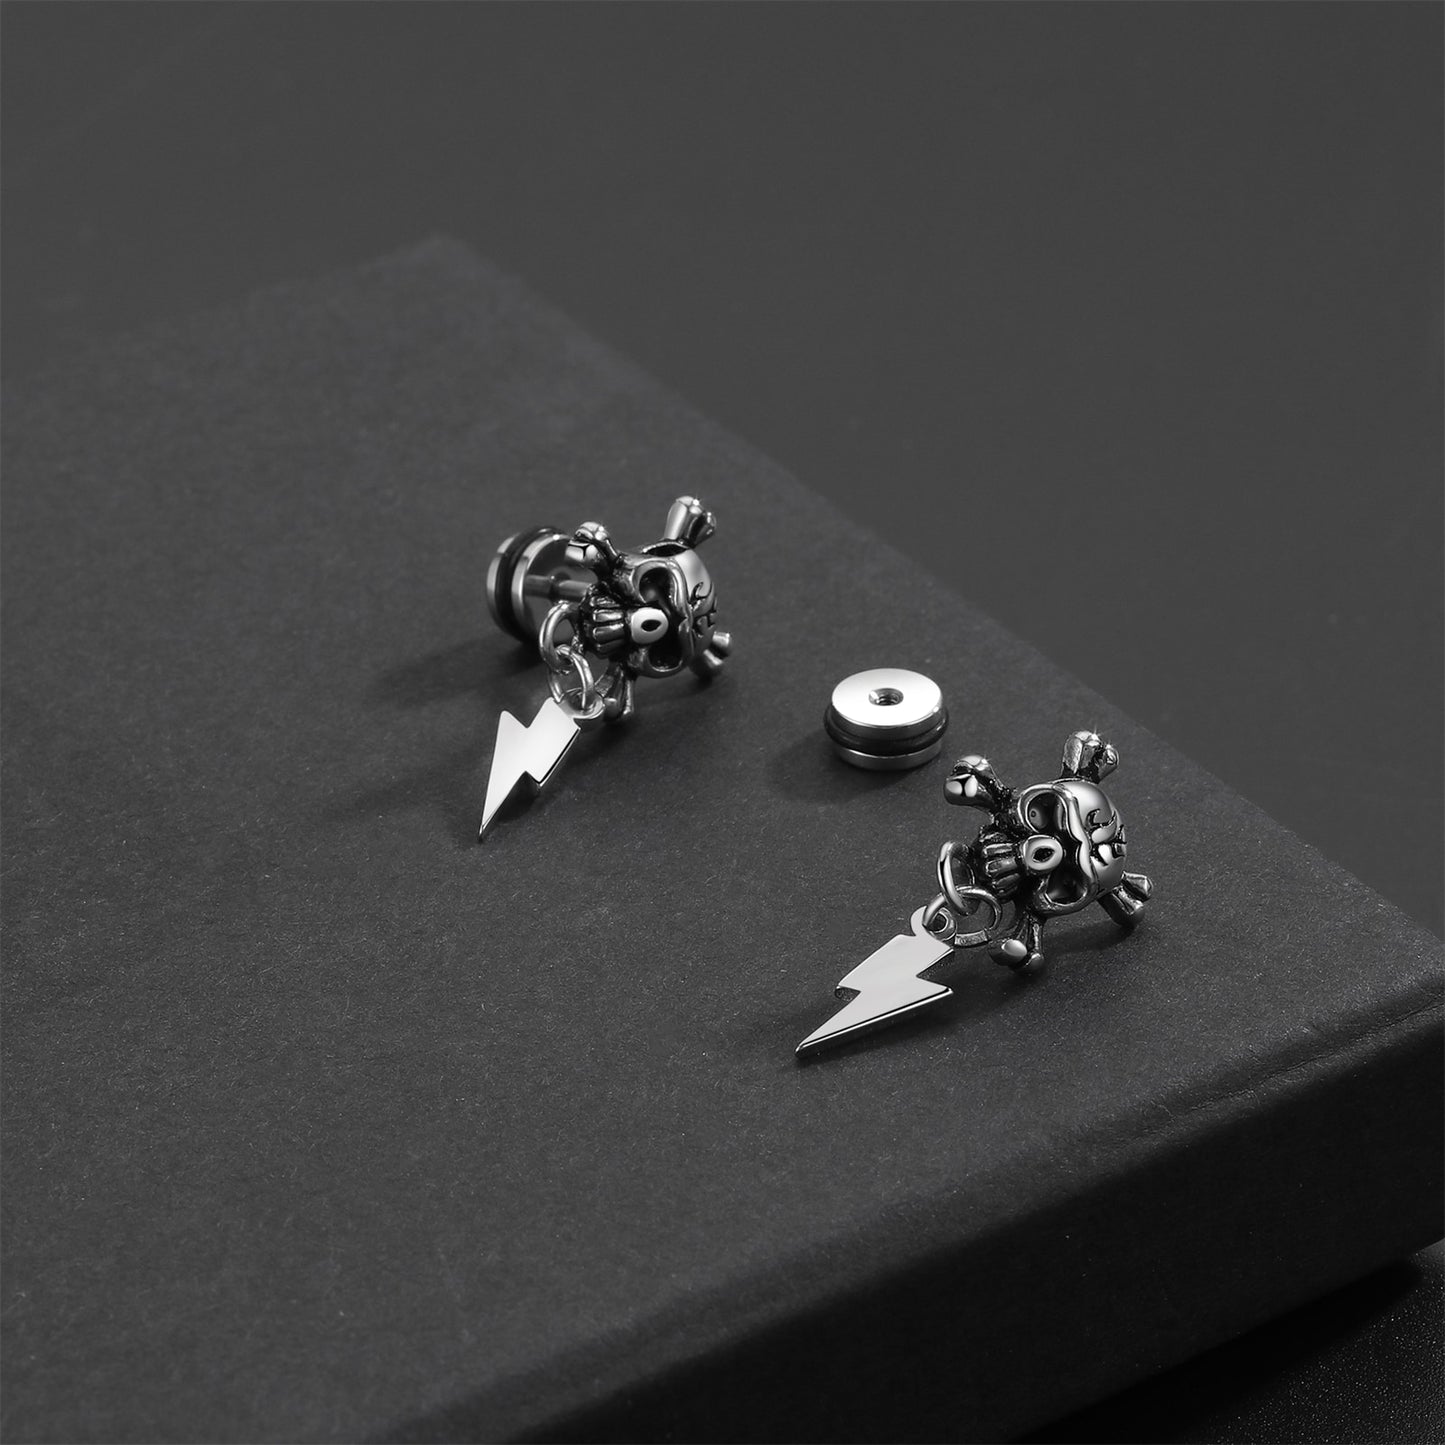 Gothic Skull Jewelry Cross Or Lightning Earrings / Stainless Steel Stud Earrings